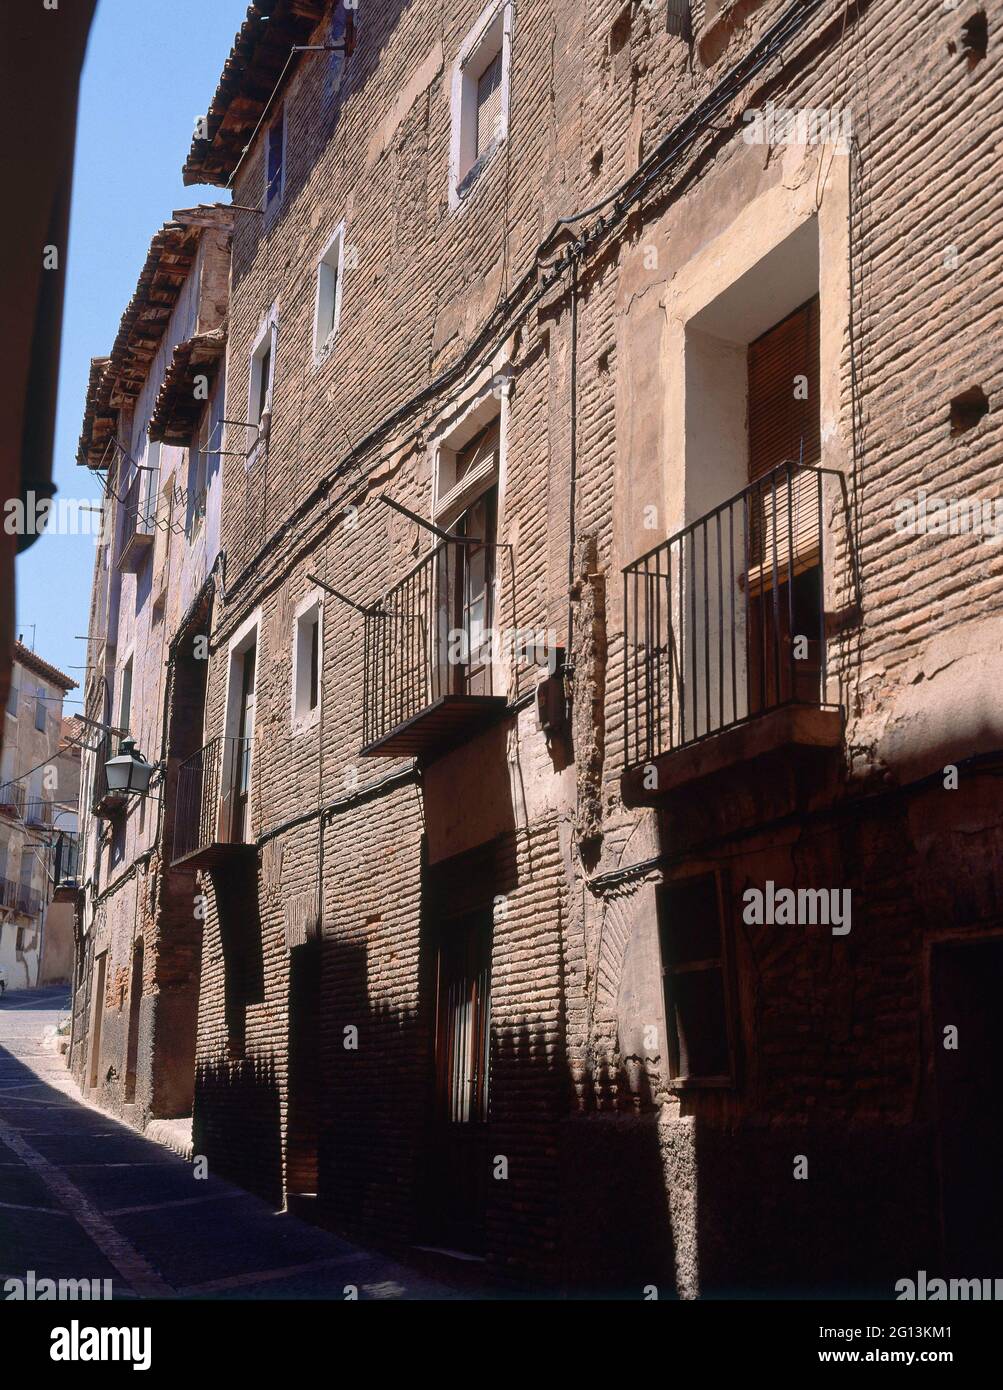 FACHADAS DE CASAS DEL BARRIO JUDIO - FOTO AÑOS 90. Location: JUDERIA. TARAZONA. Saragossa Zaragoza. SPAIN. Stock Photo